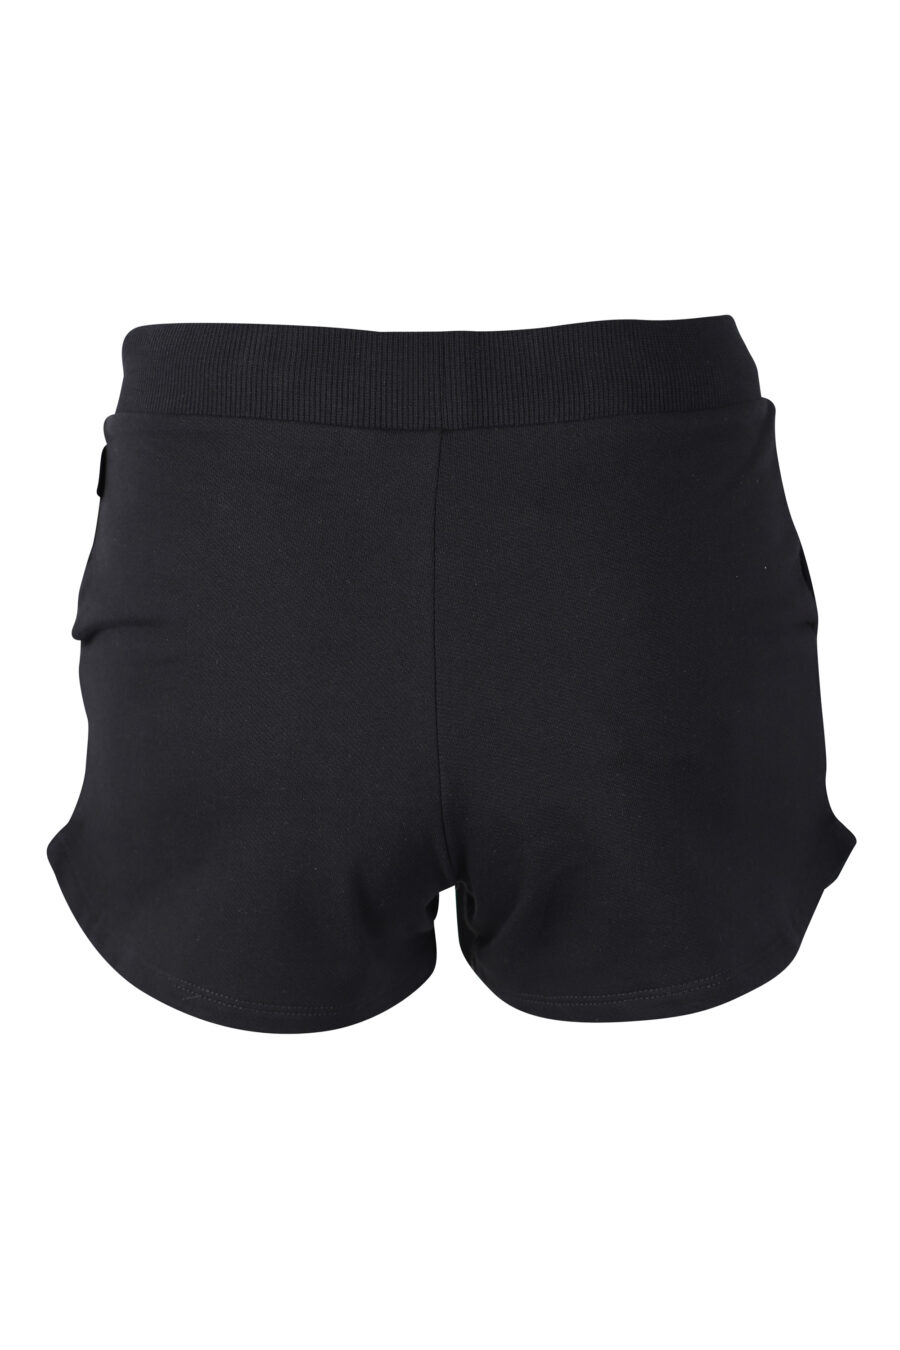 Pantalón de chándal corto negro con logo oso underbear - IMG 2287